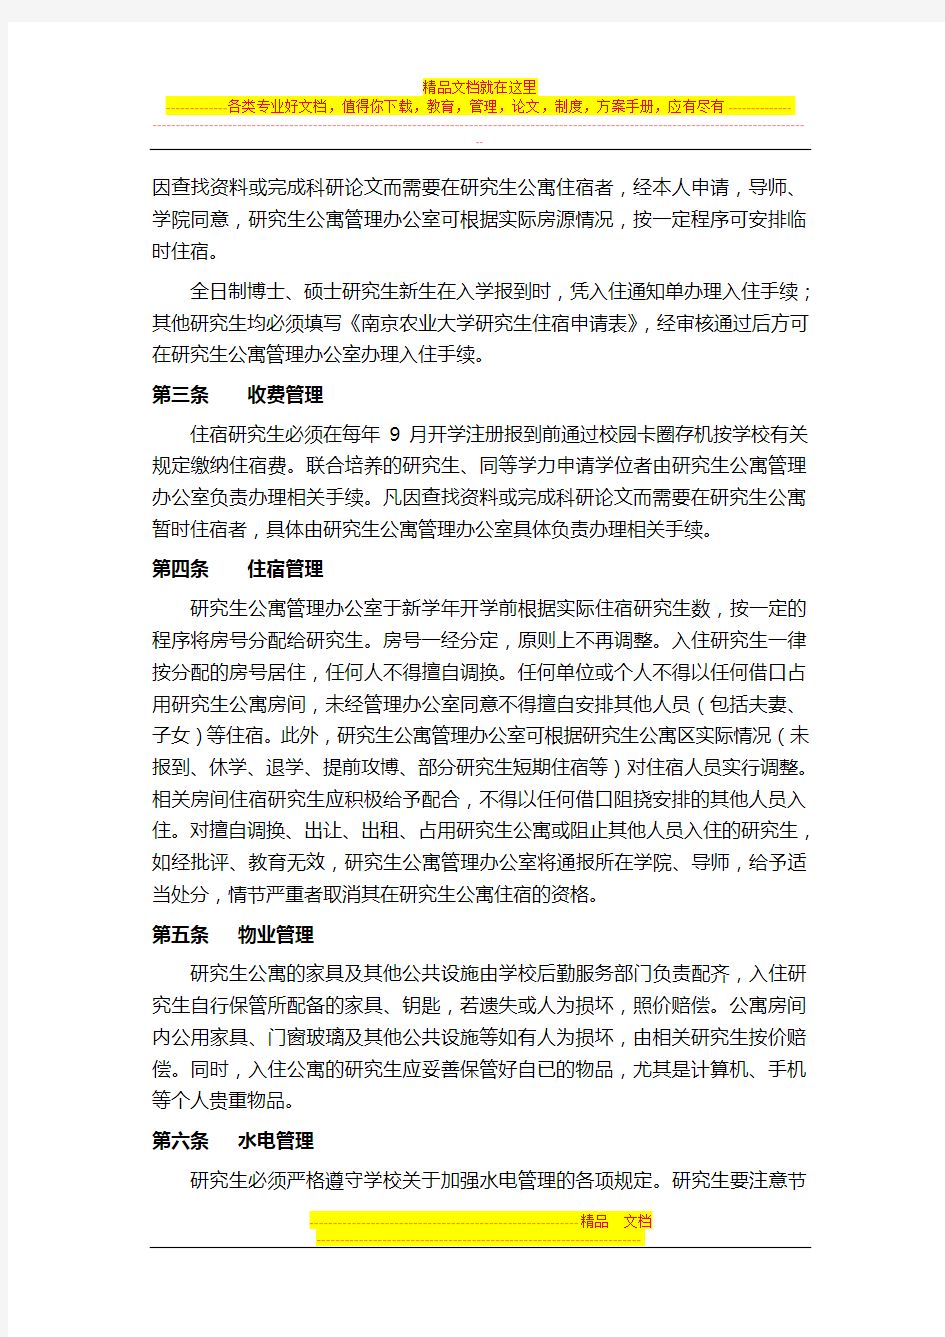 南京农业大学研究生公寓管理暂行规定